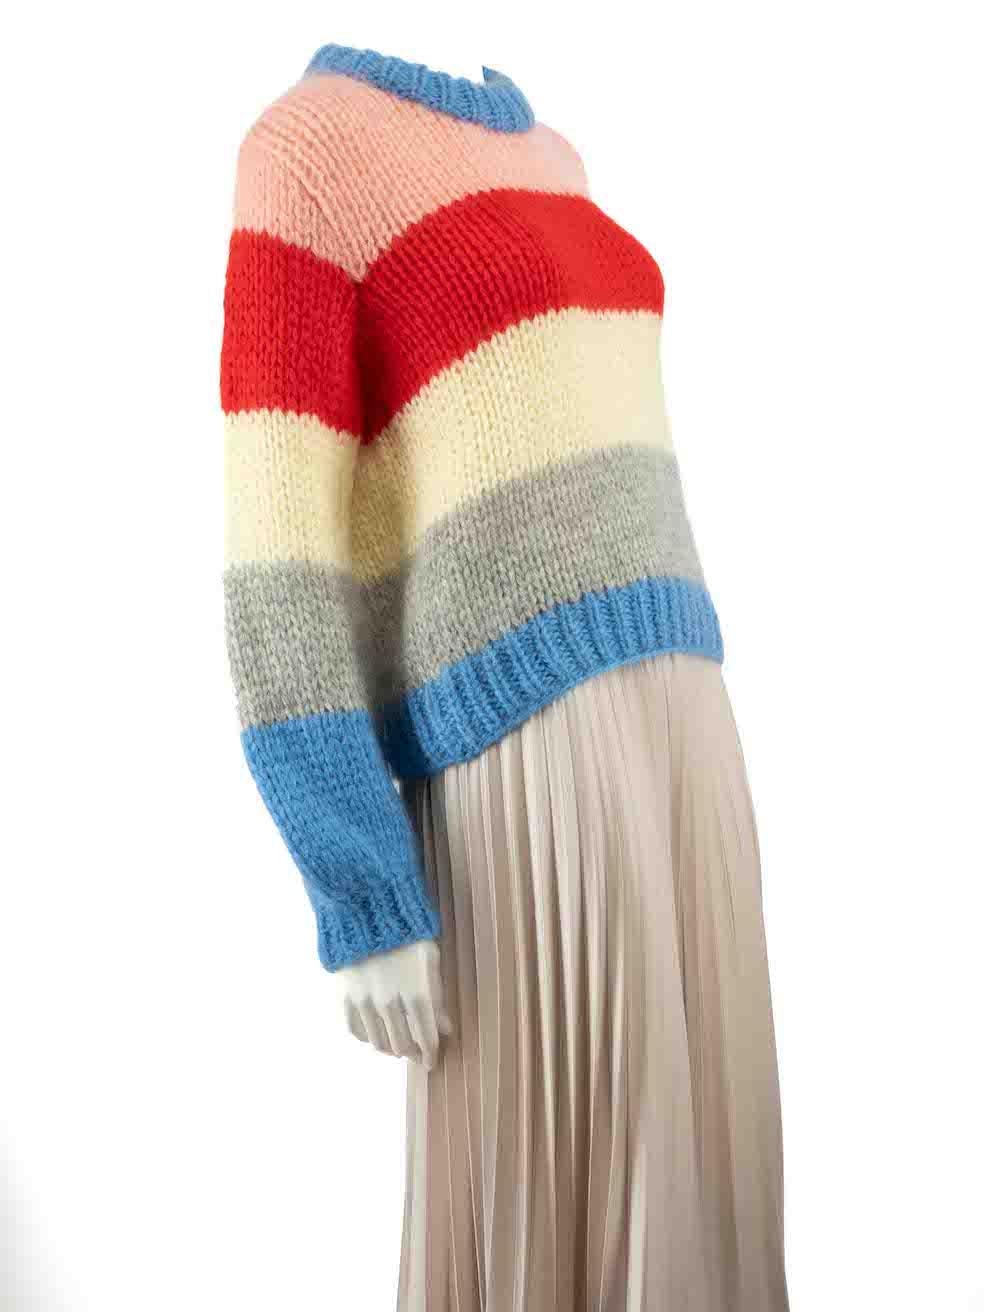 CONDIT ist sehr gut. Kaum sichtbare Abnutzungserscheinungen am Pullover sind bei diesem gebrauchten Ganni Designer-Wiederverkaufsartikel zu erkennen.
 
 
 
 Einzelheiten
 
 
 Mehrfarbig - blau, rosa, rot, gelb, grau
 
 Wolle
 
 Pullover stricken
 
